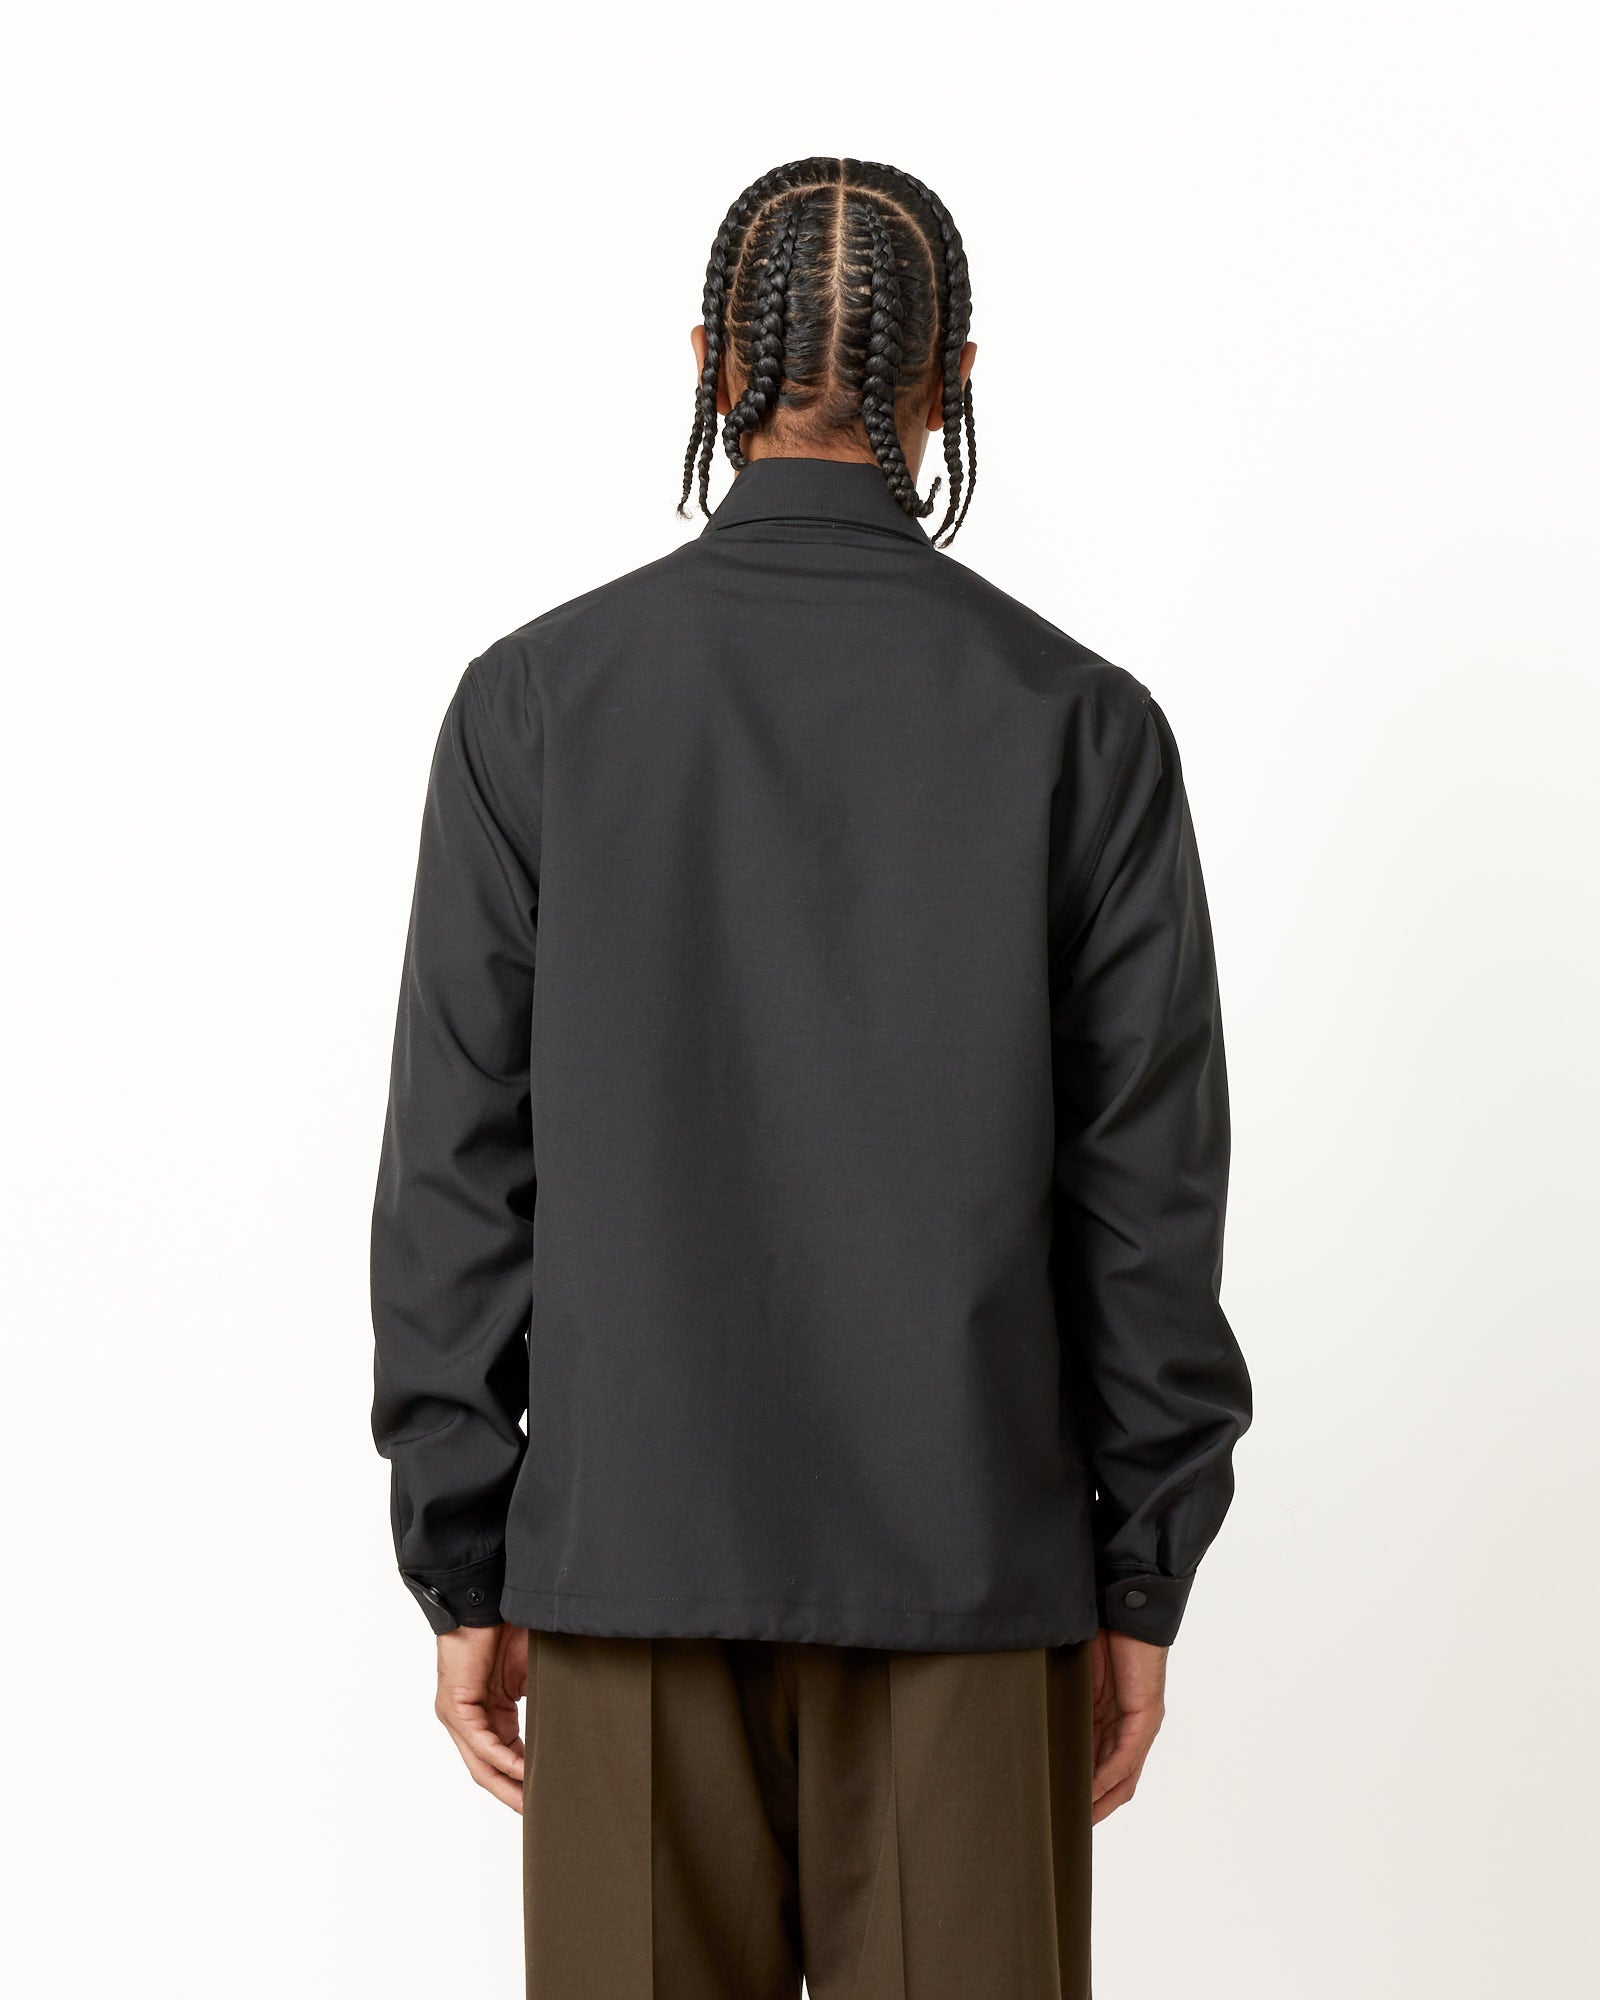 Forum Jacket in Tropical Wool Black